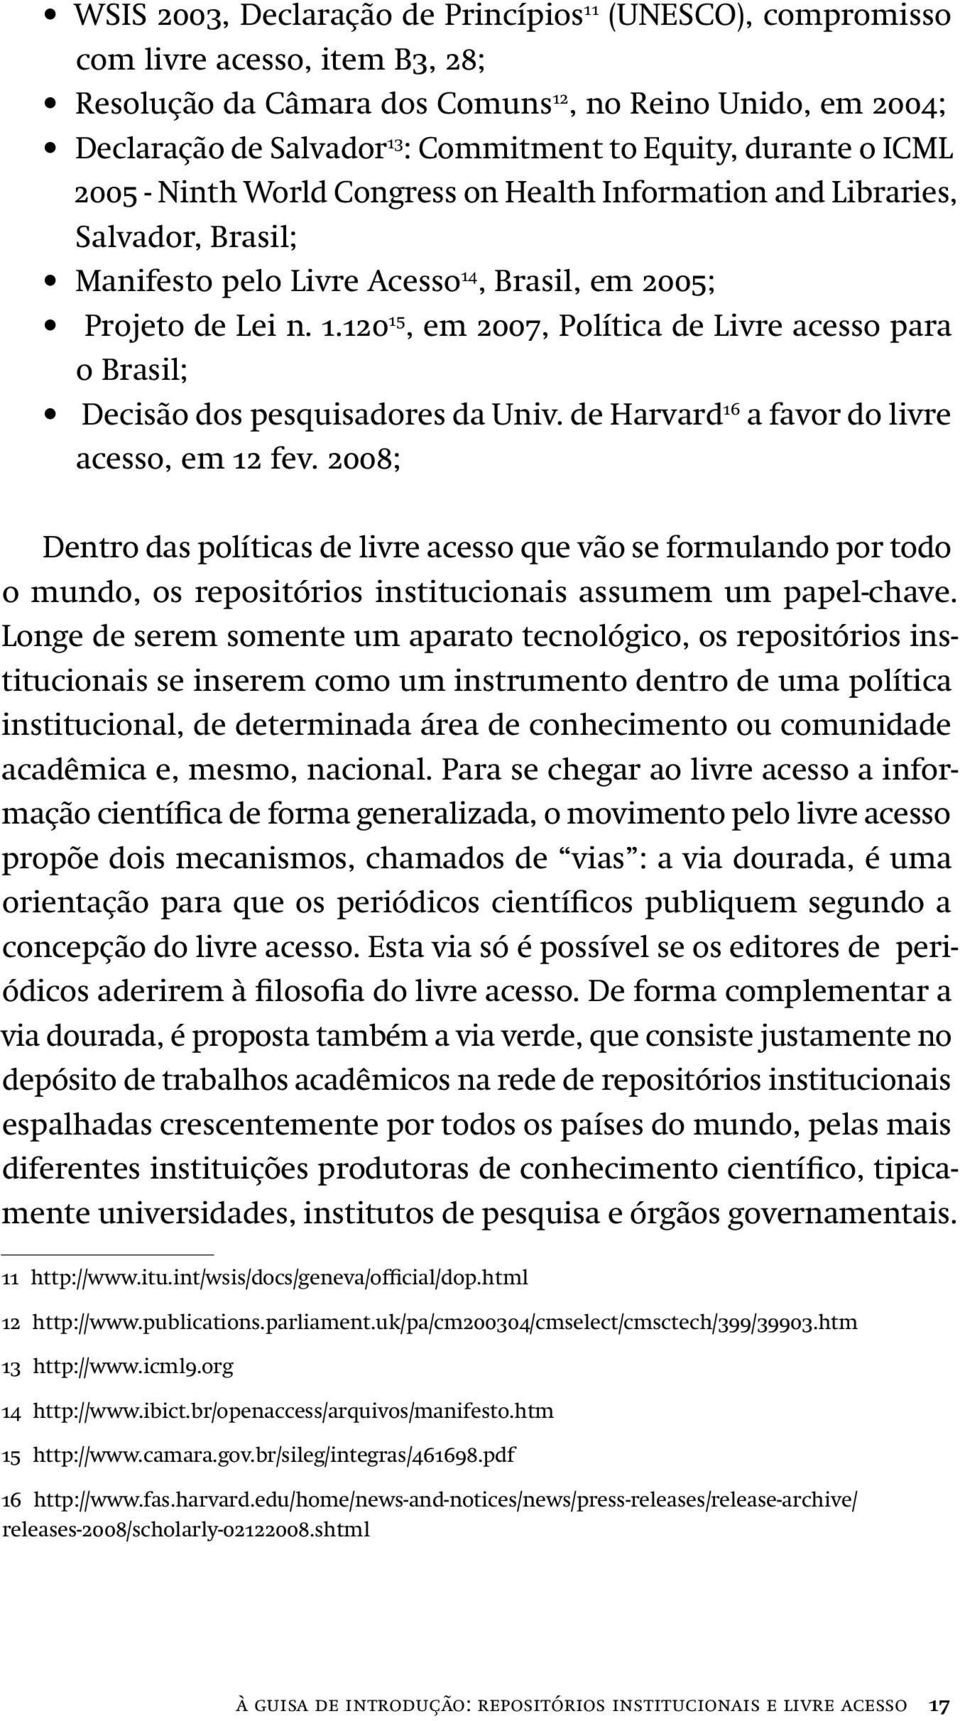 , Brasil, em 2005; Projeto de Lei n. 1.120 15, em 2007, Política de Livre acesso para o Brasil; Decisão dos pesquisadores da Univ. de Harvard 16 a favor do livre acesso, em 12 fev.